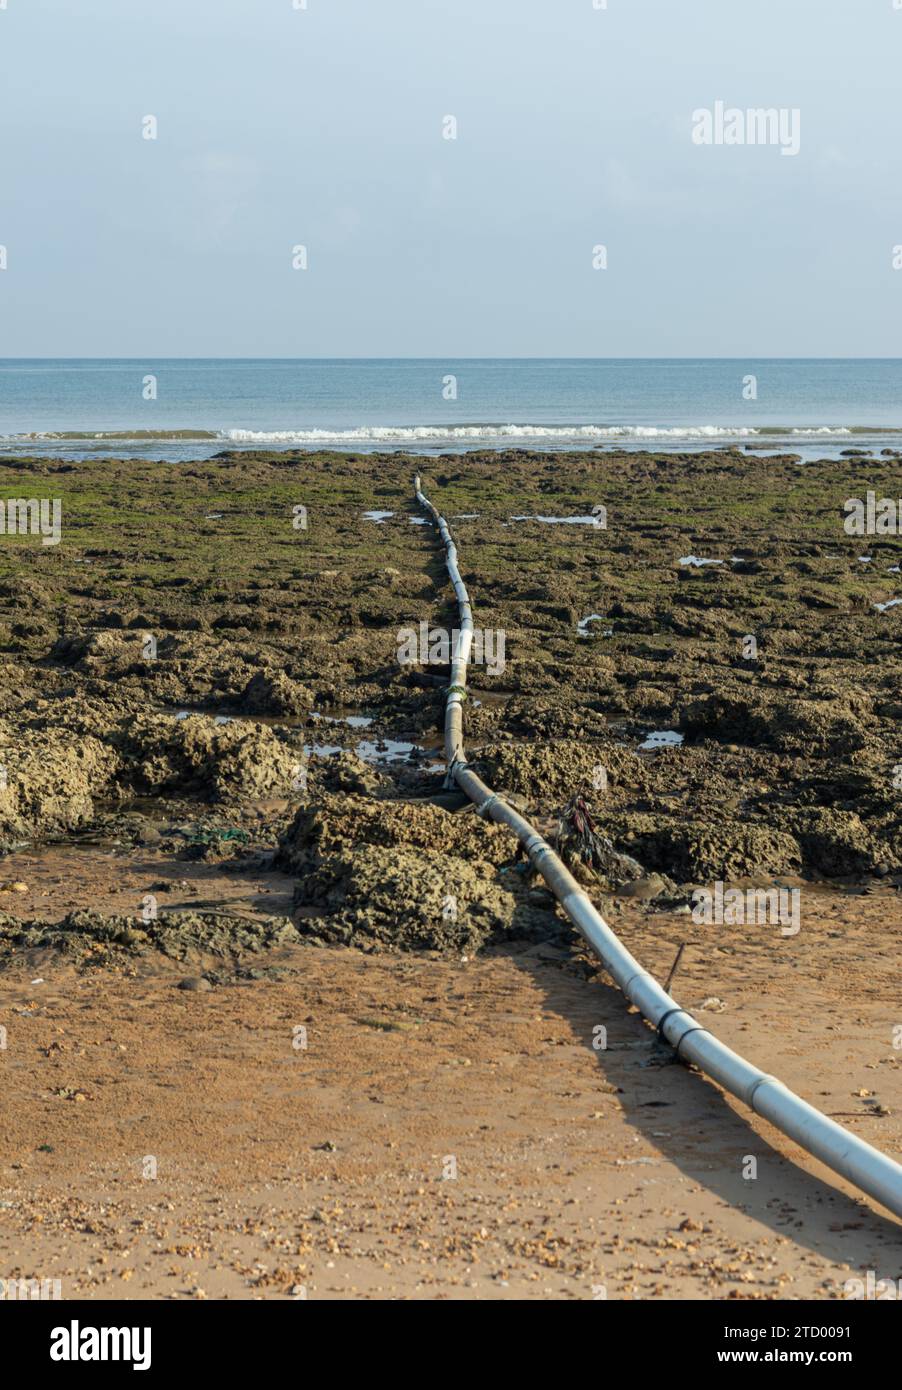 Acque reflue sporche dal tubo che fluisce in mare, inquinamento ambientale Foto Stock